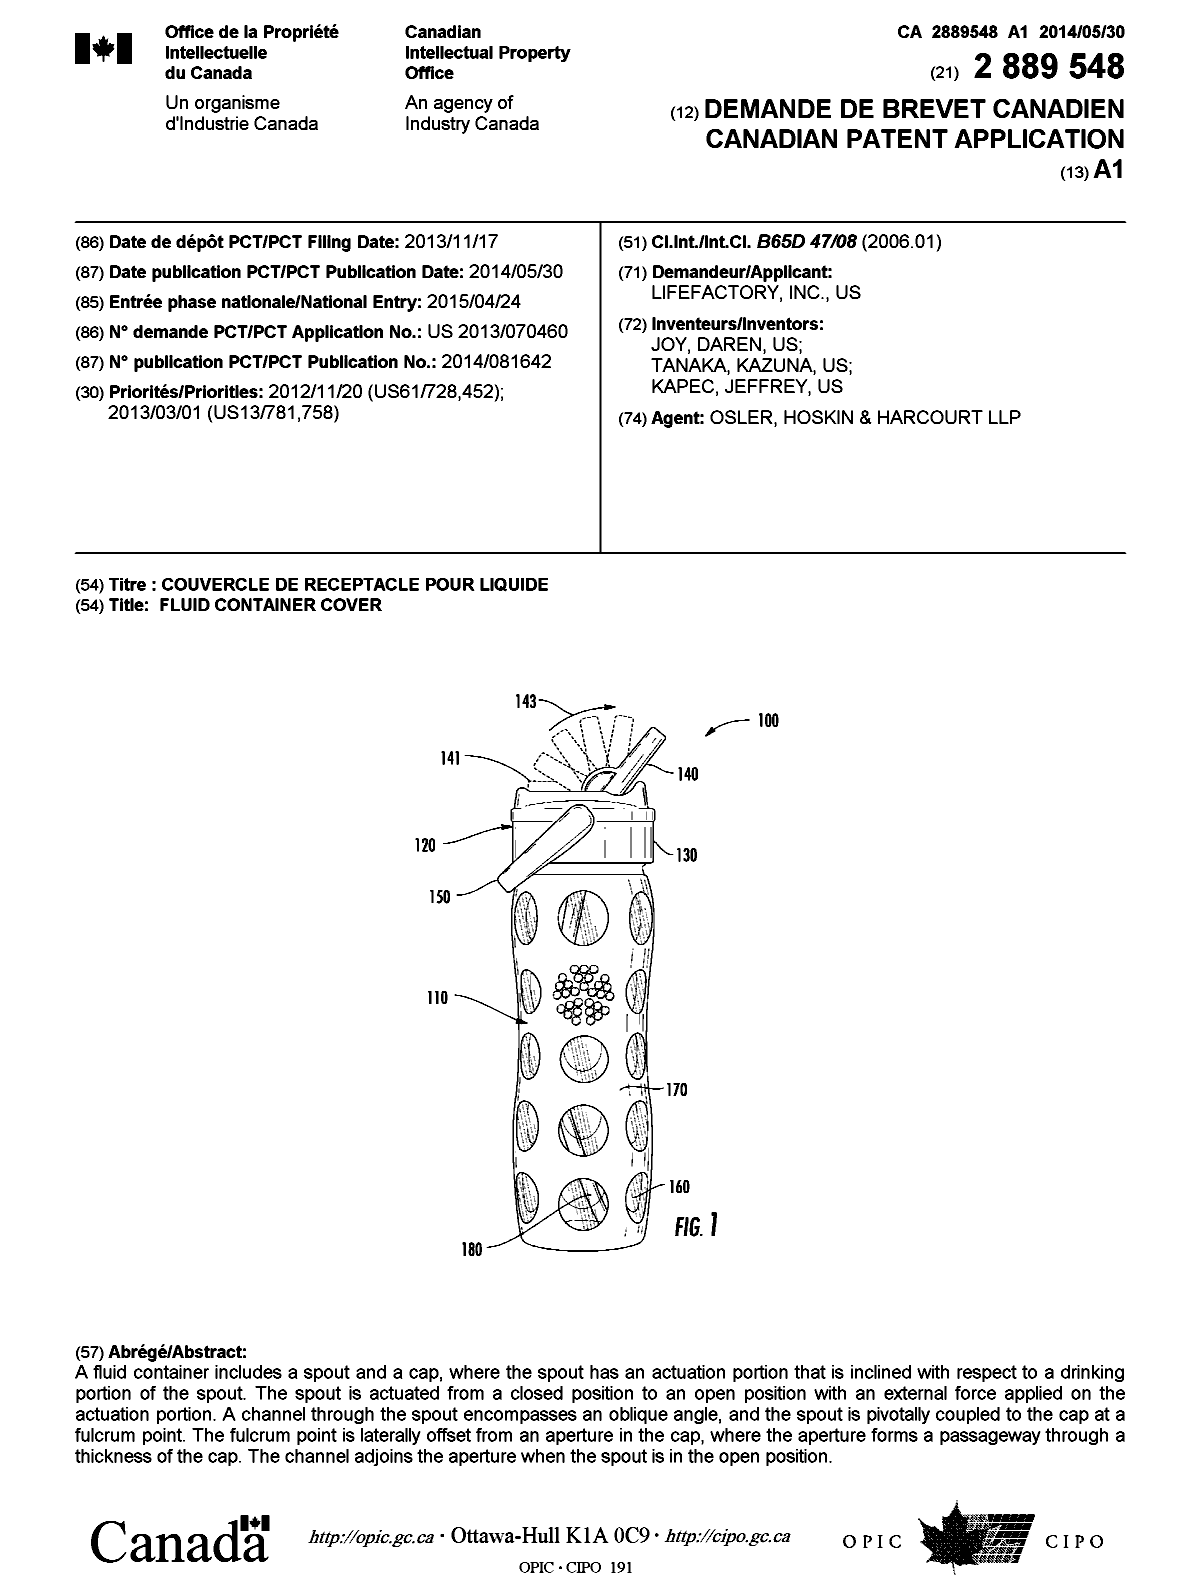 Document de brevet canadien 2889548. Page couverture 20150602. Image 1 de 1